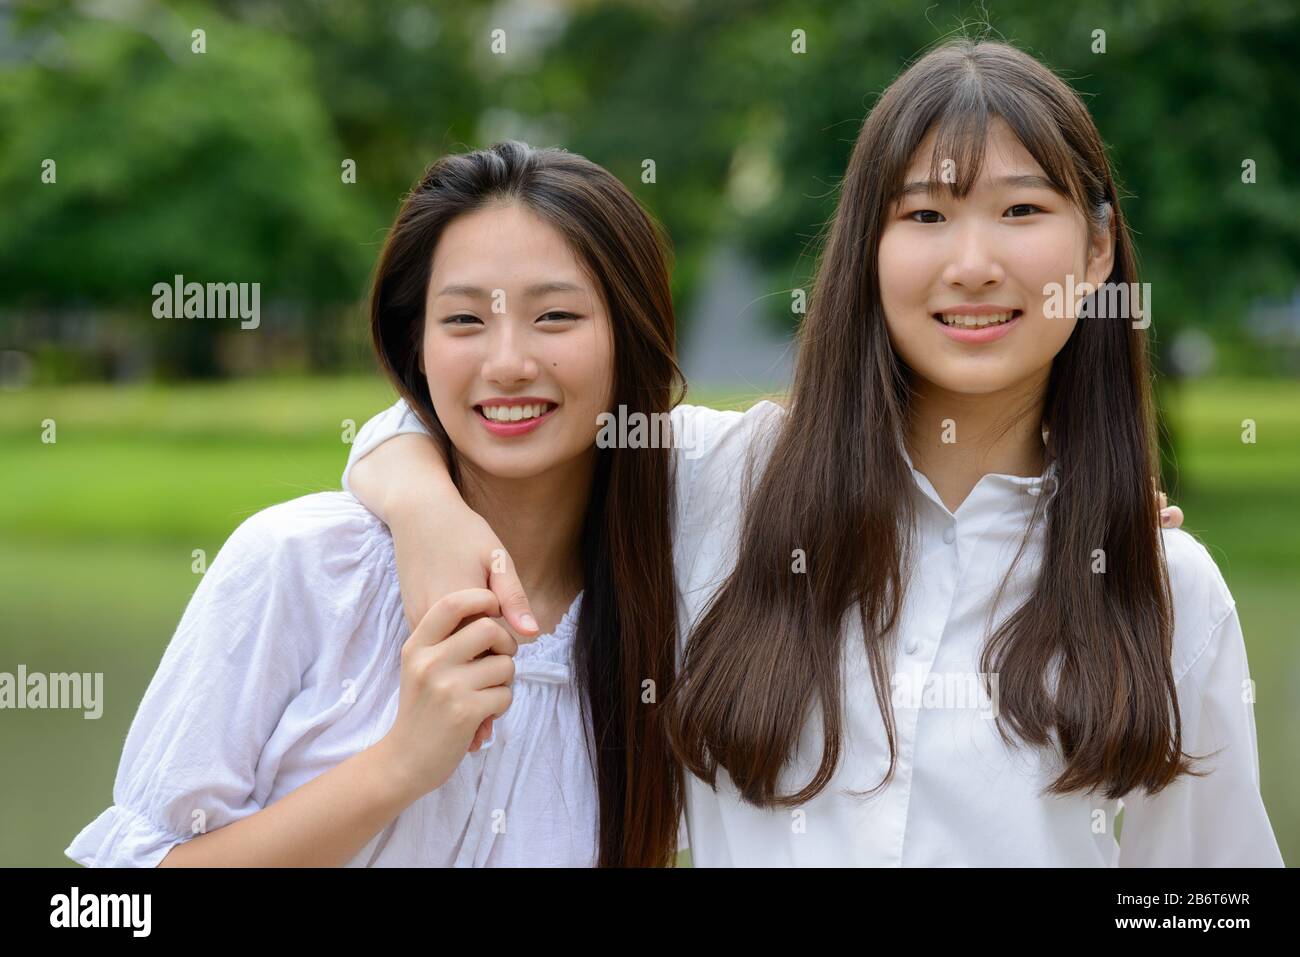 Deux jeunes filles adolescentes asiatiques joyeuses qui se rassemblent dans le parc Banque D'Images